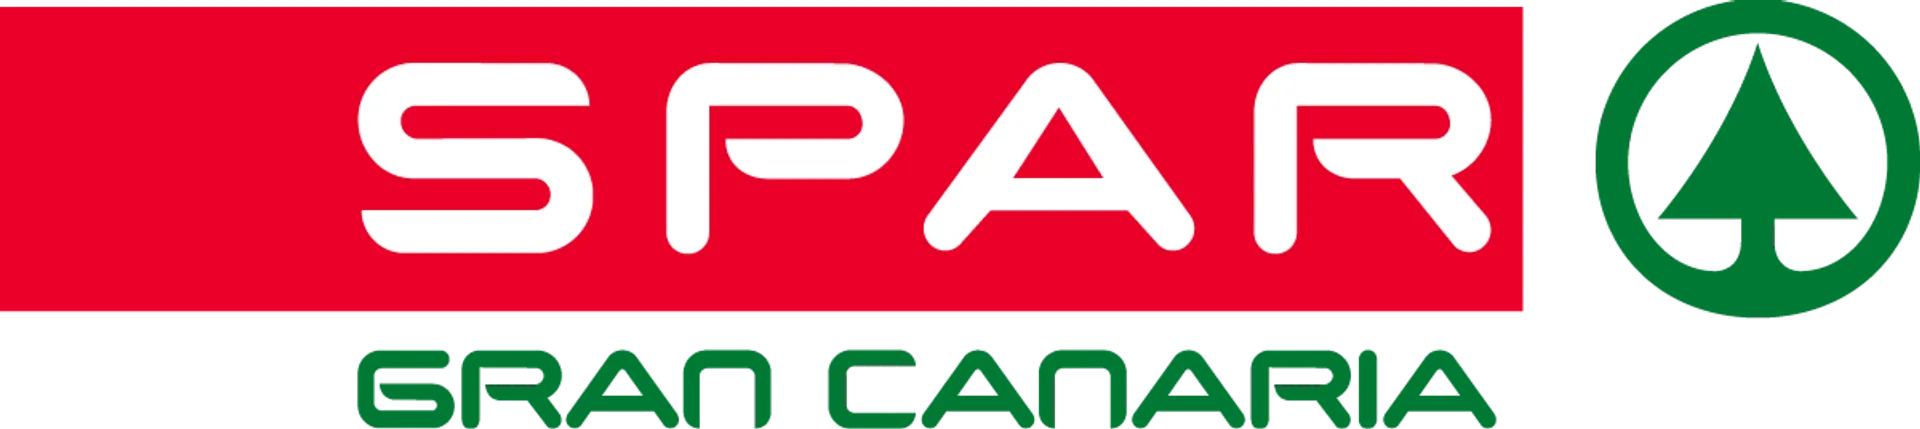 SPAR GRAN CANARIA logo